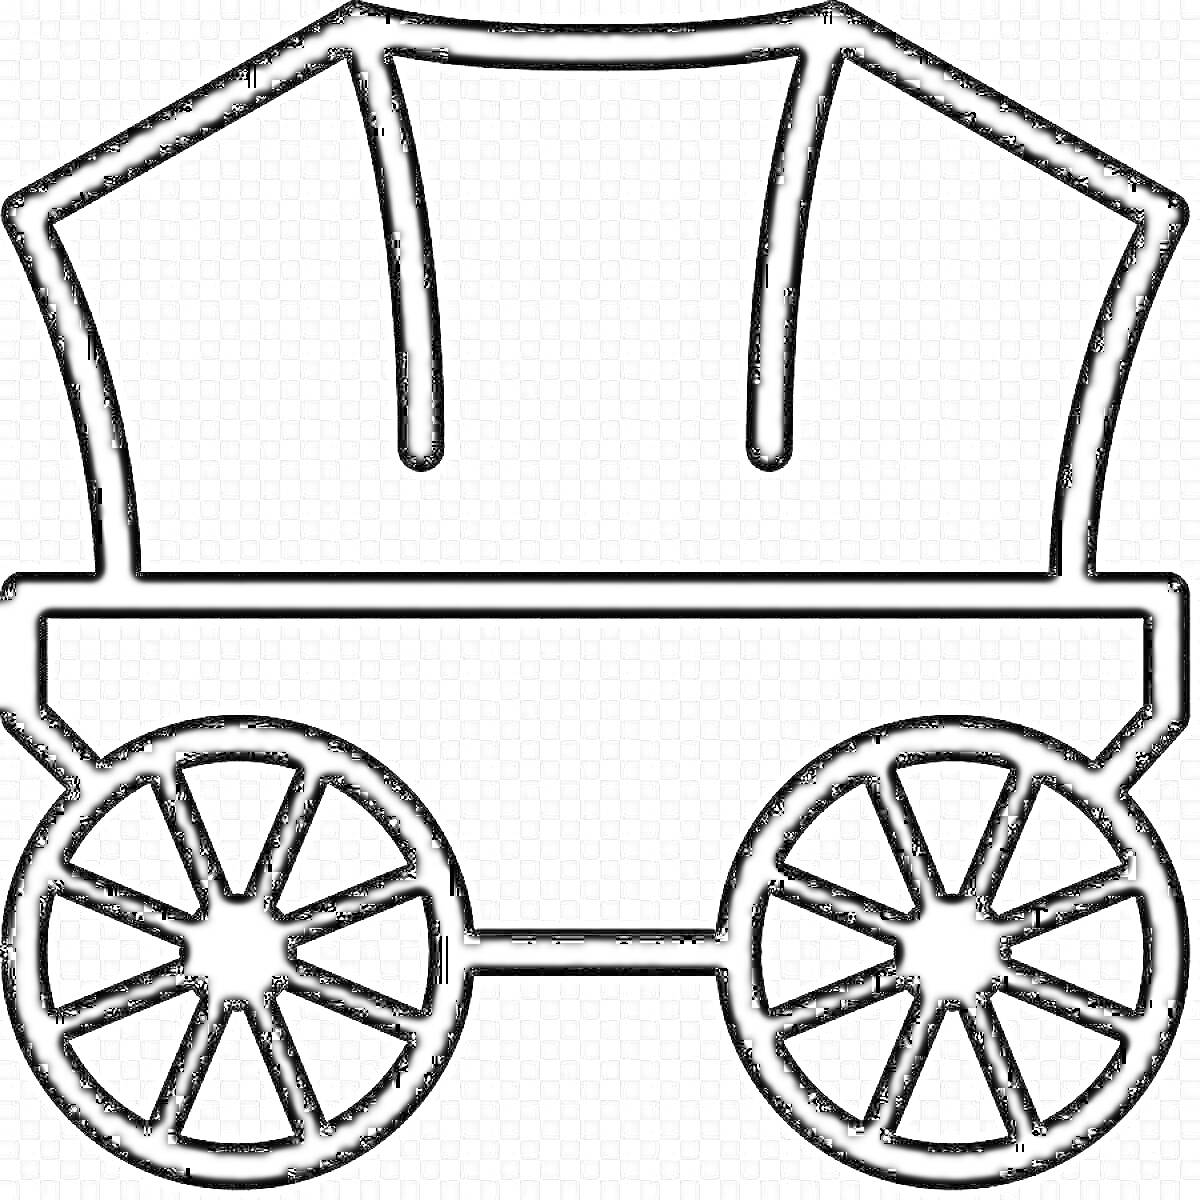 Телега с крышей на двух больших колёсах